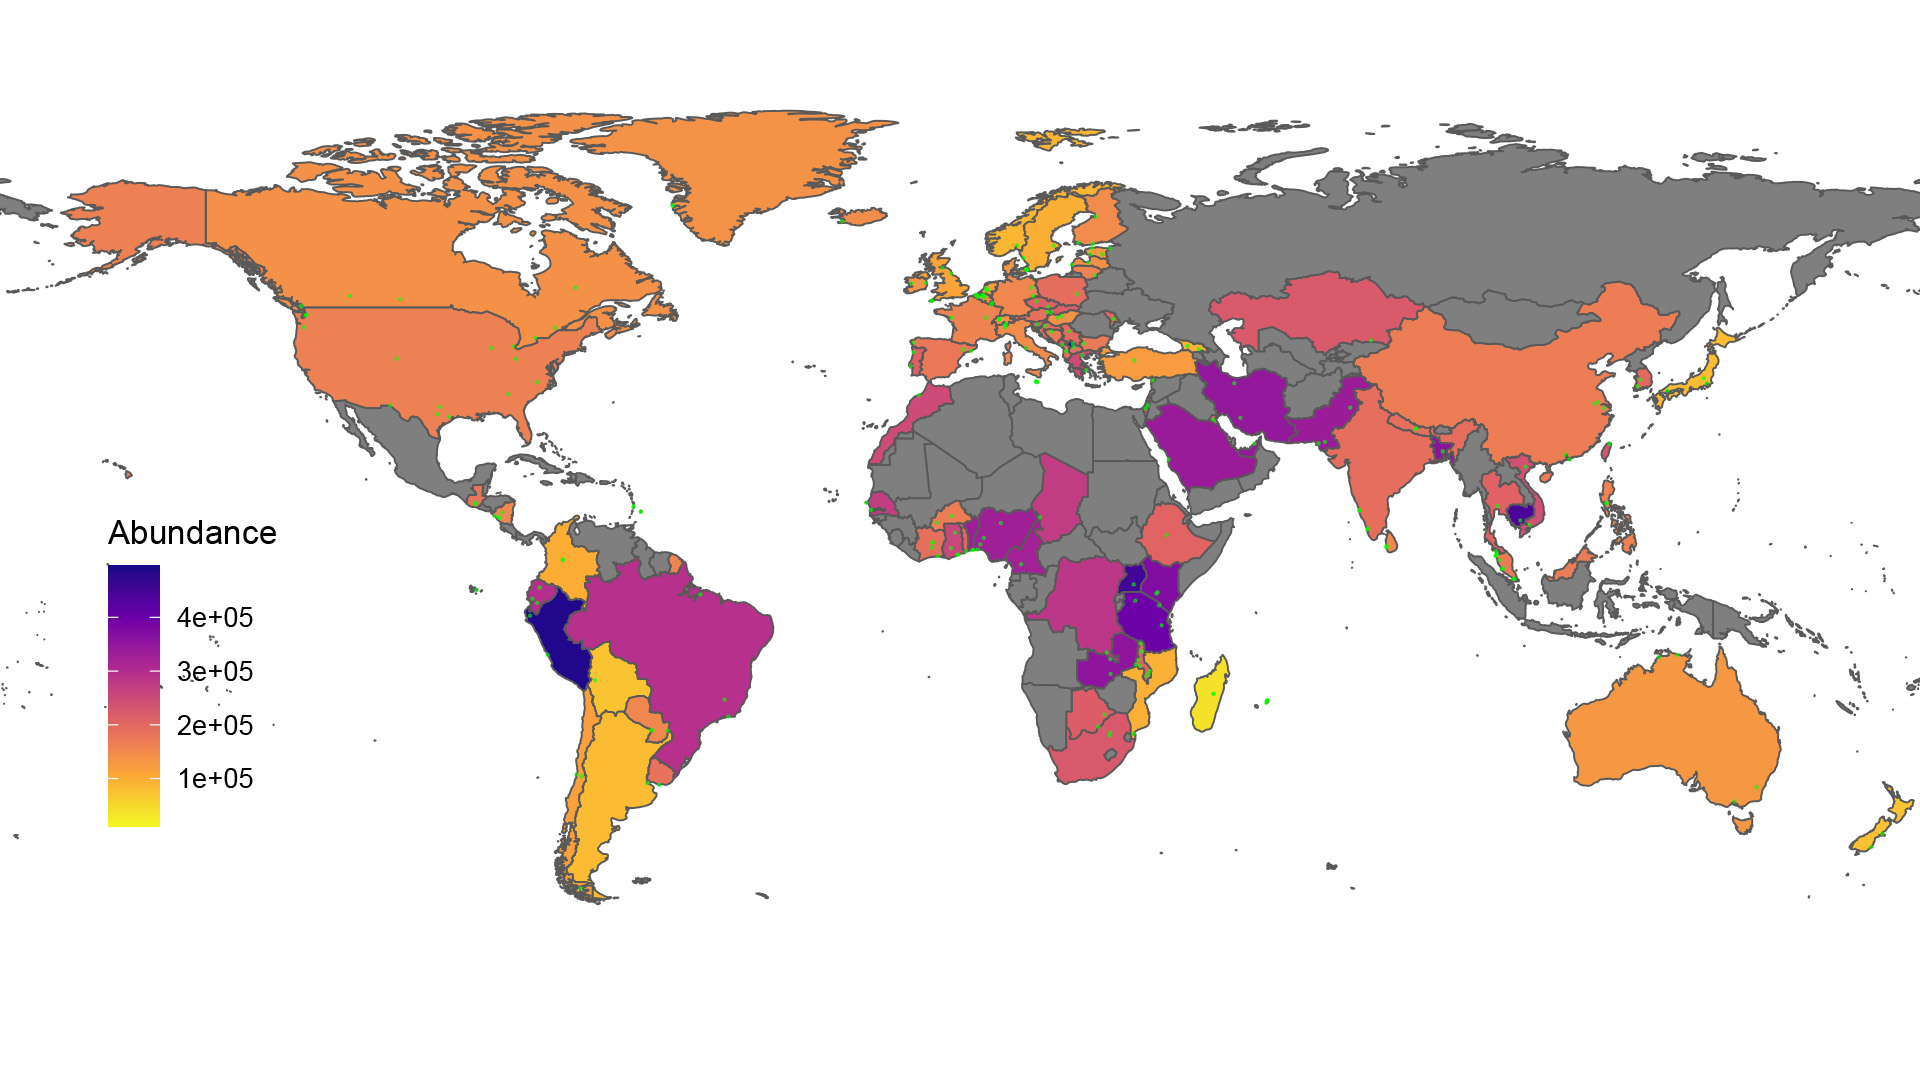 Verdenskort der viser forekomsten af resistensgener i forskellige lande.